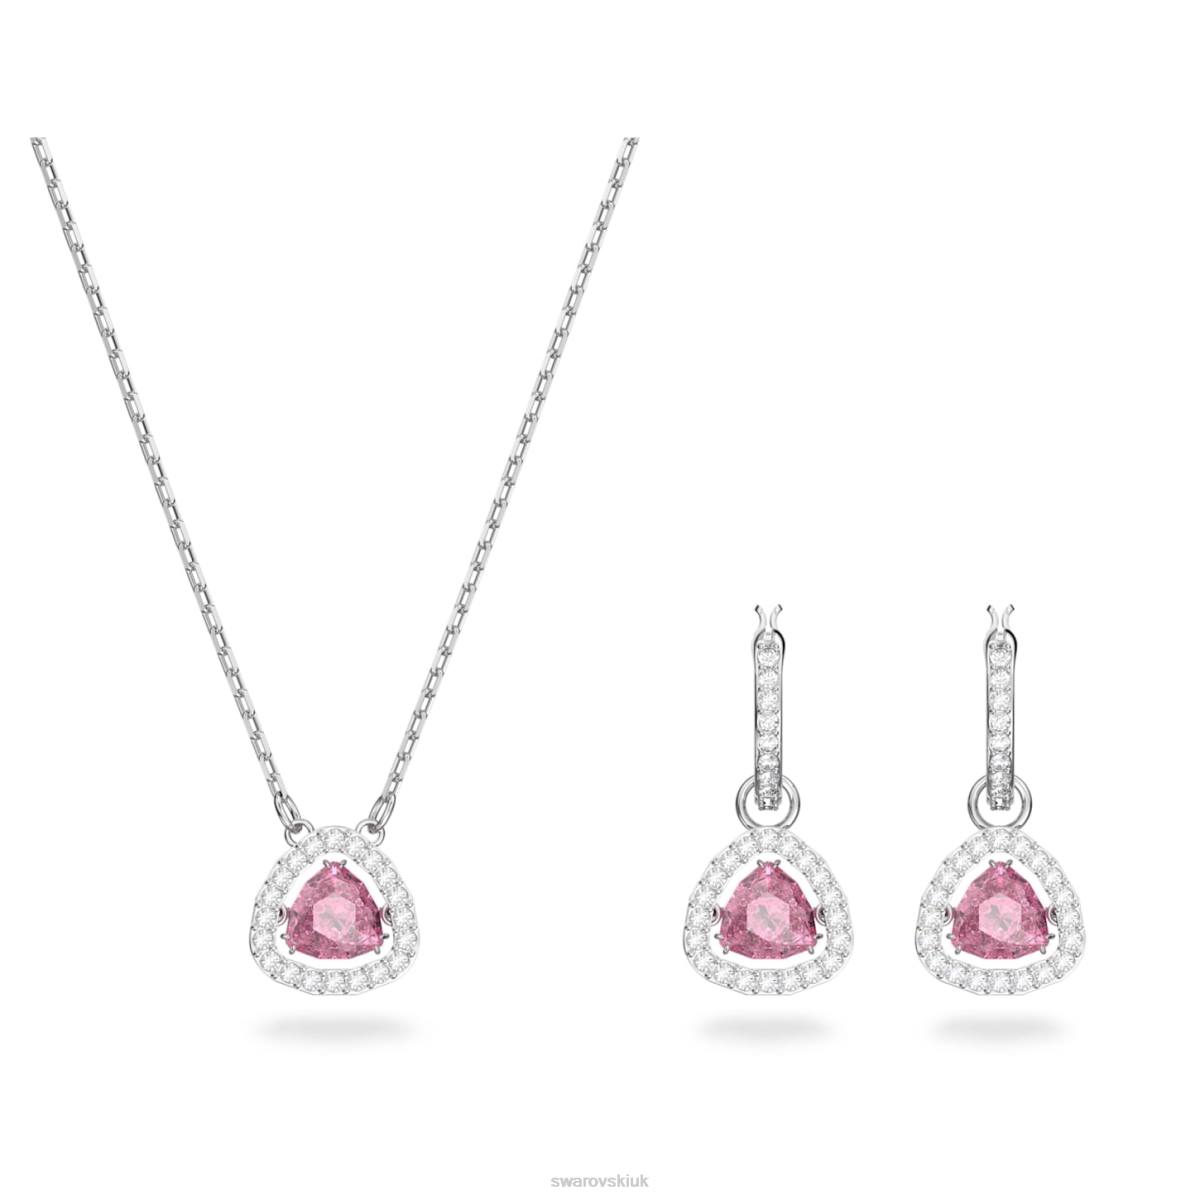 Jewelry Swarovski Millenia set Trilliant cut, Pink, Rhodium plated 48JX407